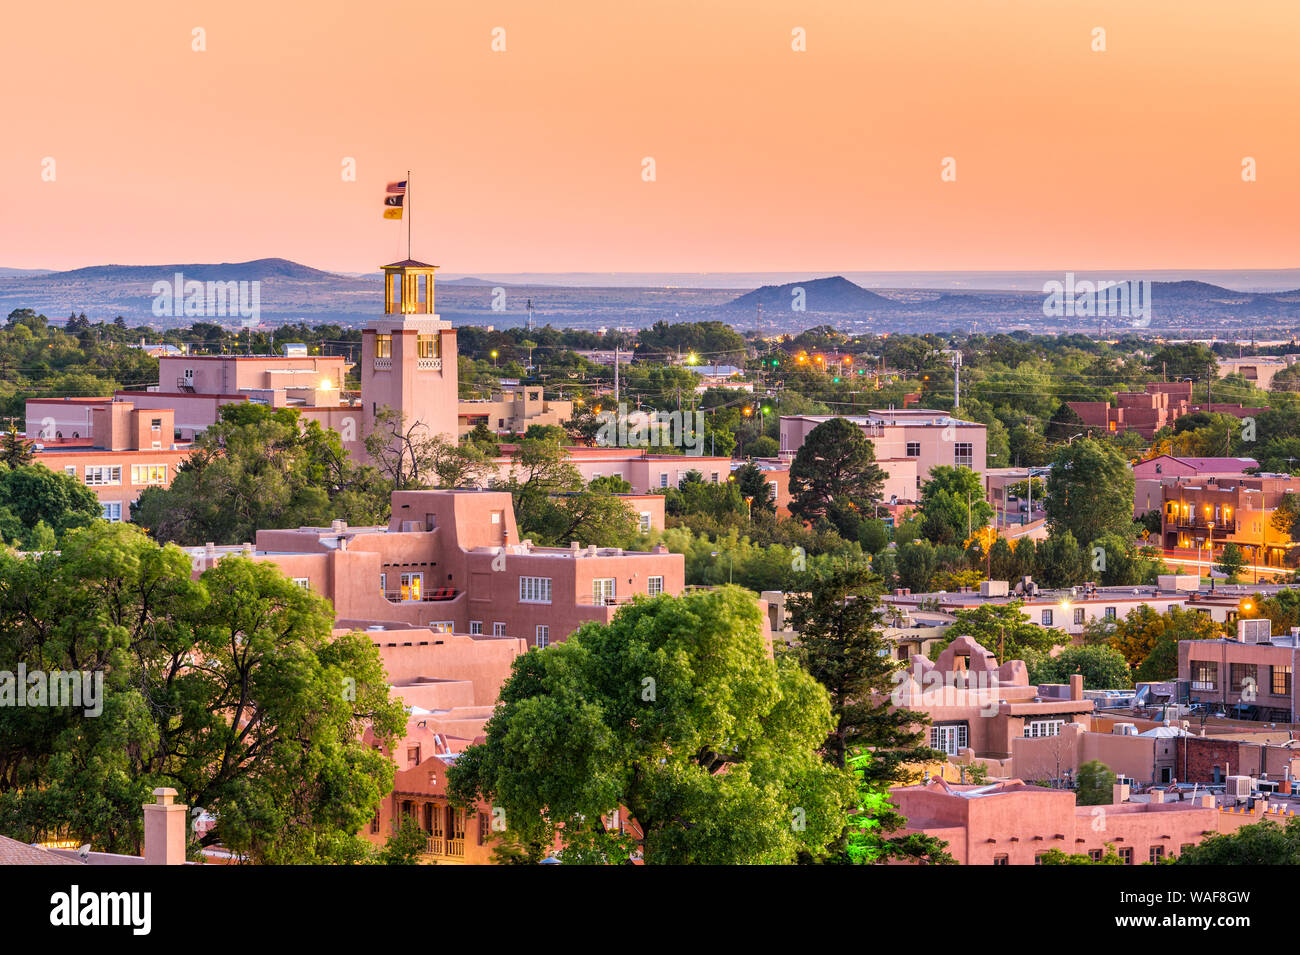 Santa Fe, New Mexico, USA downtown skyline at dusk. Stock Photo